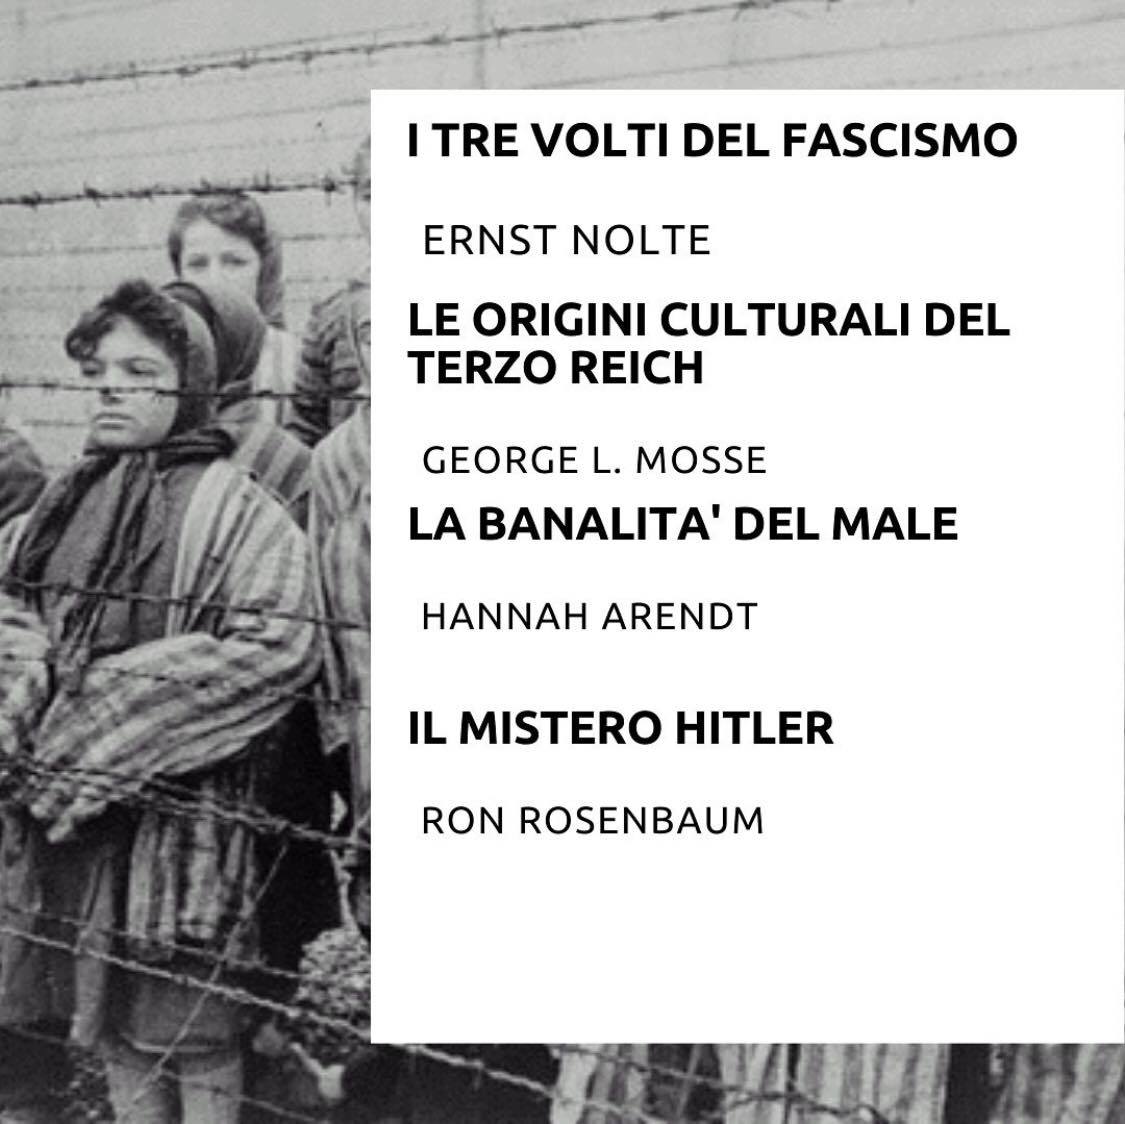 Un po' di libri letti negli anni sull'argomento, ne avete altri interessanti da segnalare?
#lagiornatadellamemoria
#recensioniabombetta
#olocausto #nazismo #fascismo